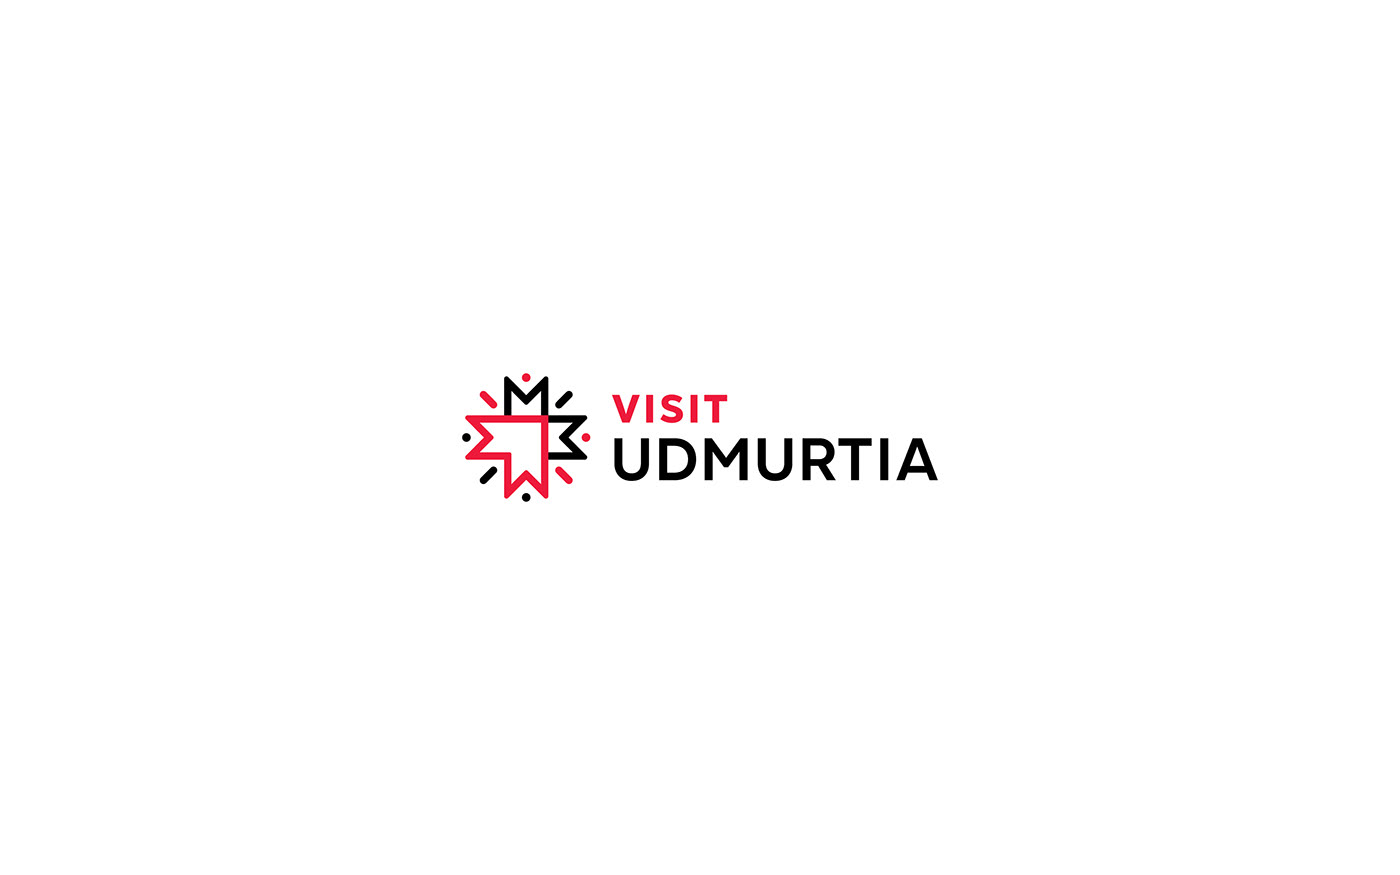 branding  city Republic tourism Travel trip Udmurtia